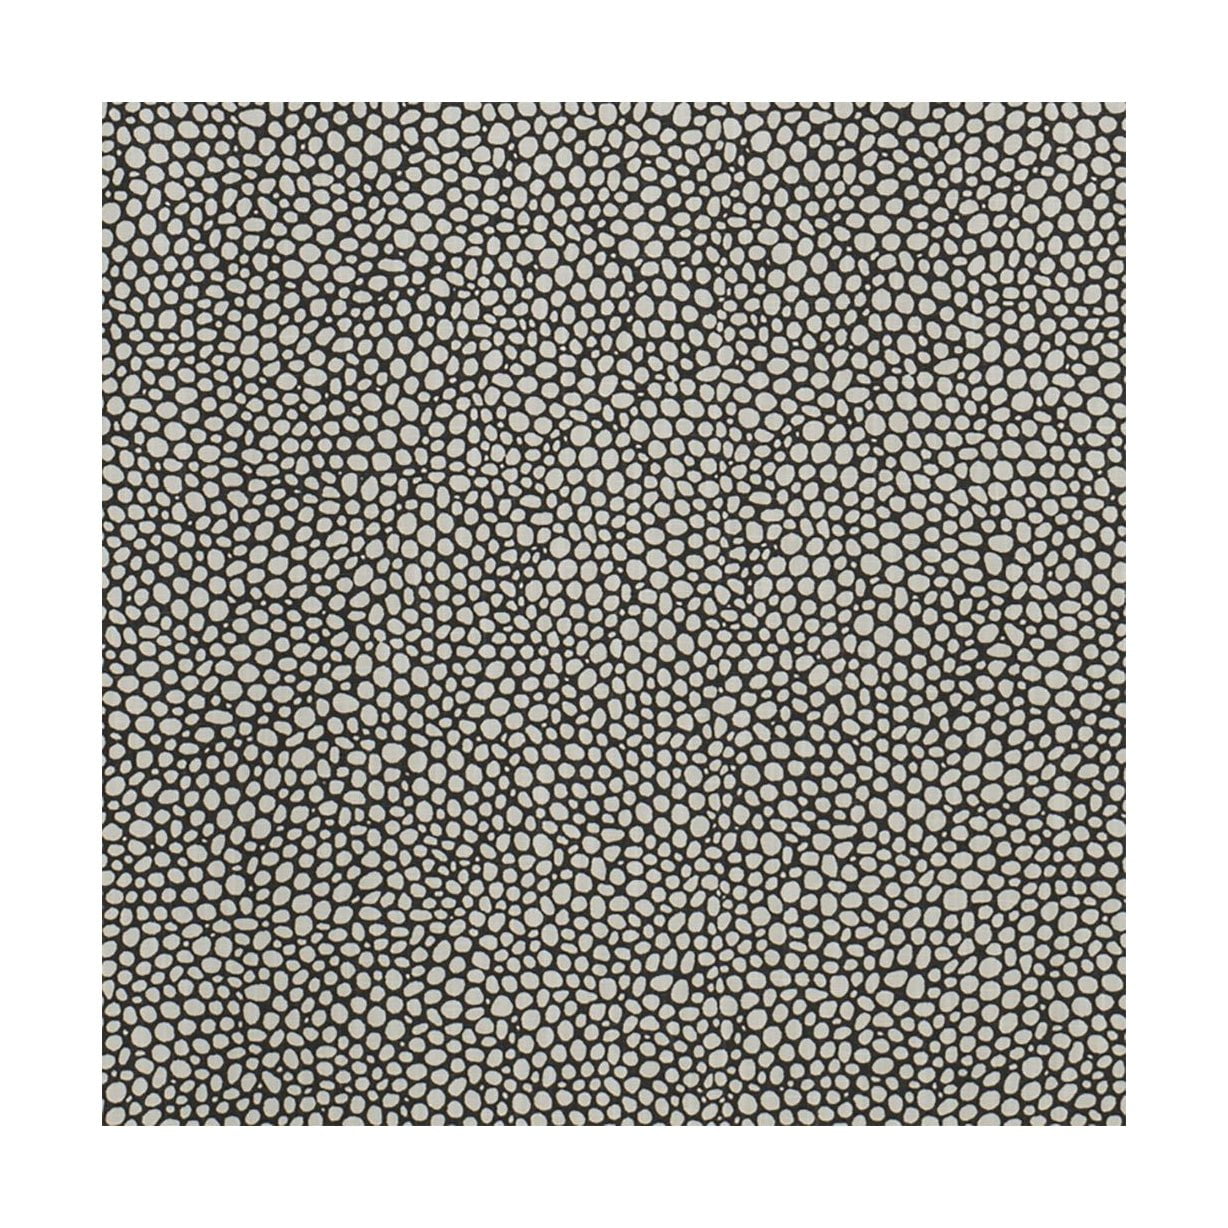 Spira Dotte Fabric Width 150 cm (pris per meter), asfalt